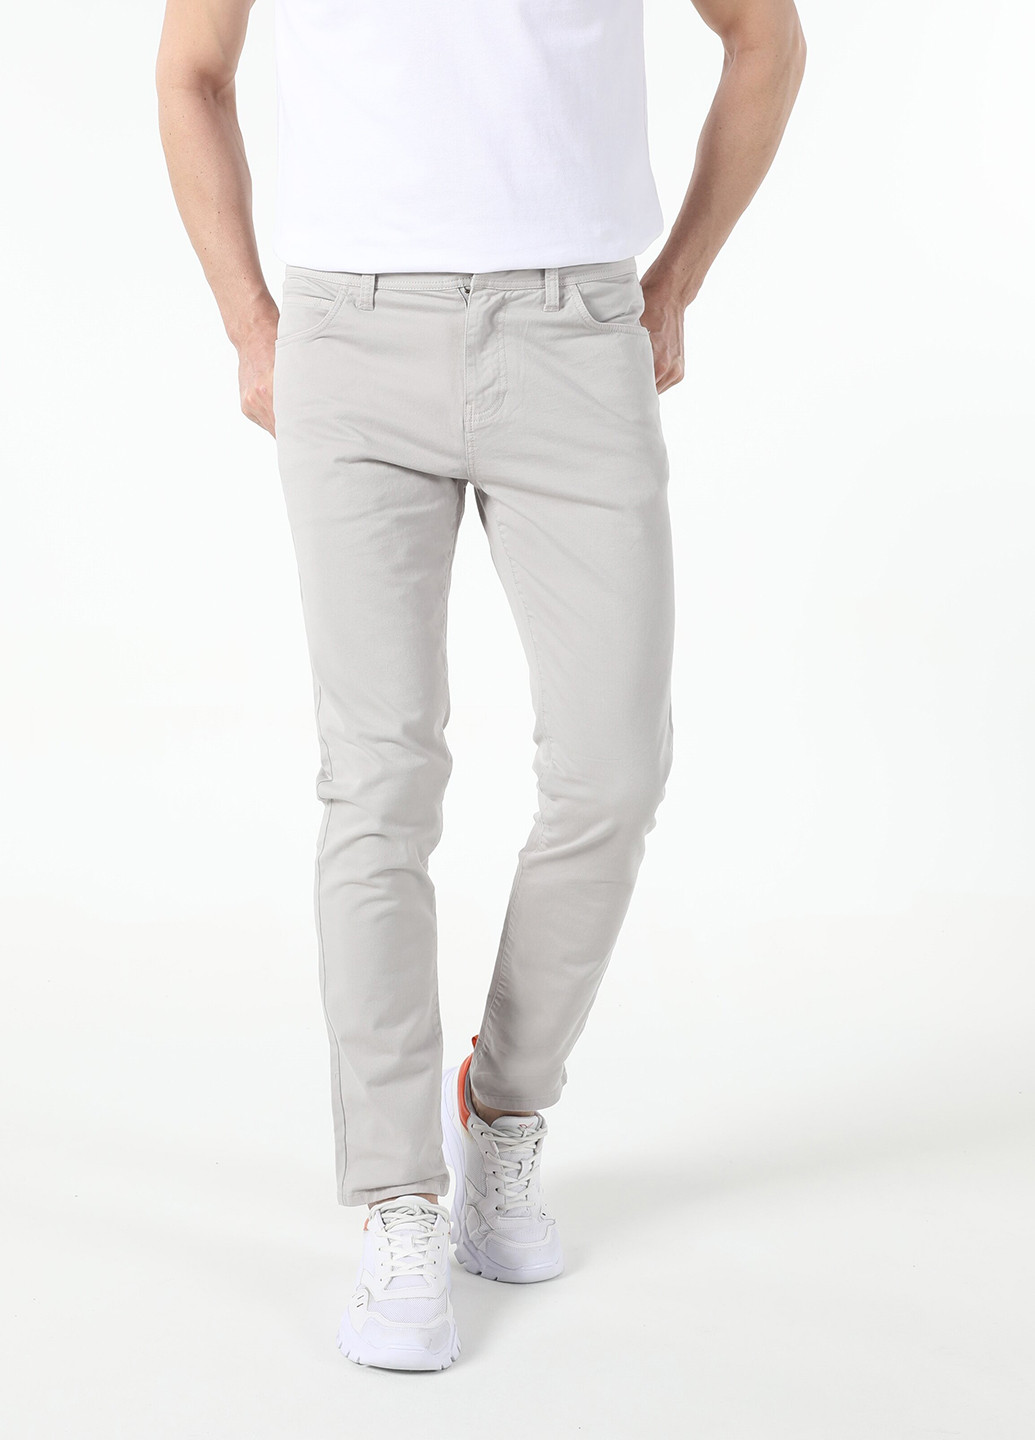 Светло-серые джинсовые демисезонные зауженные брюки Colin's